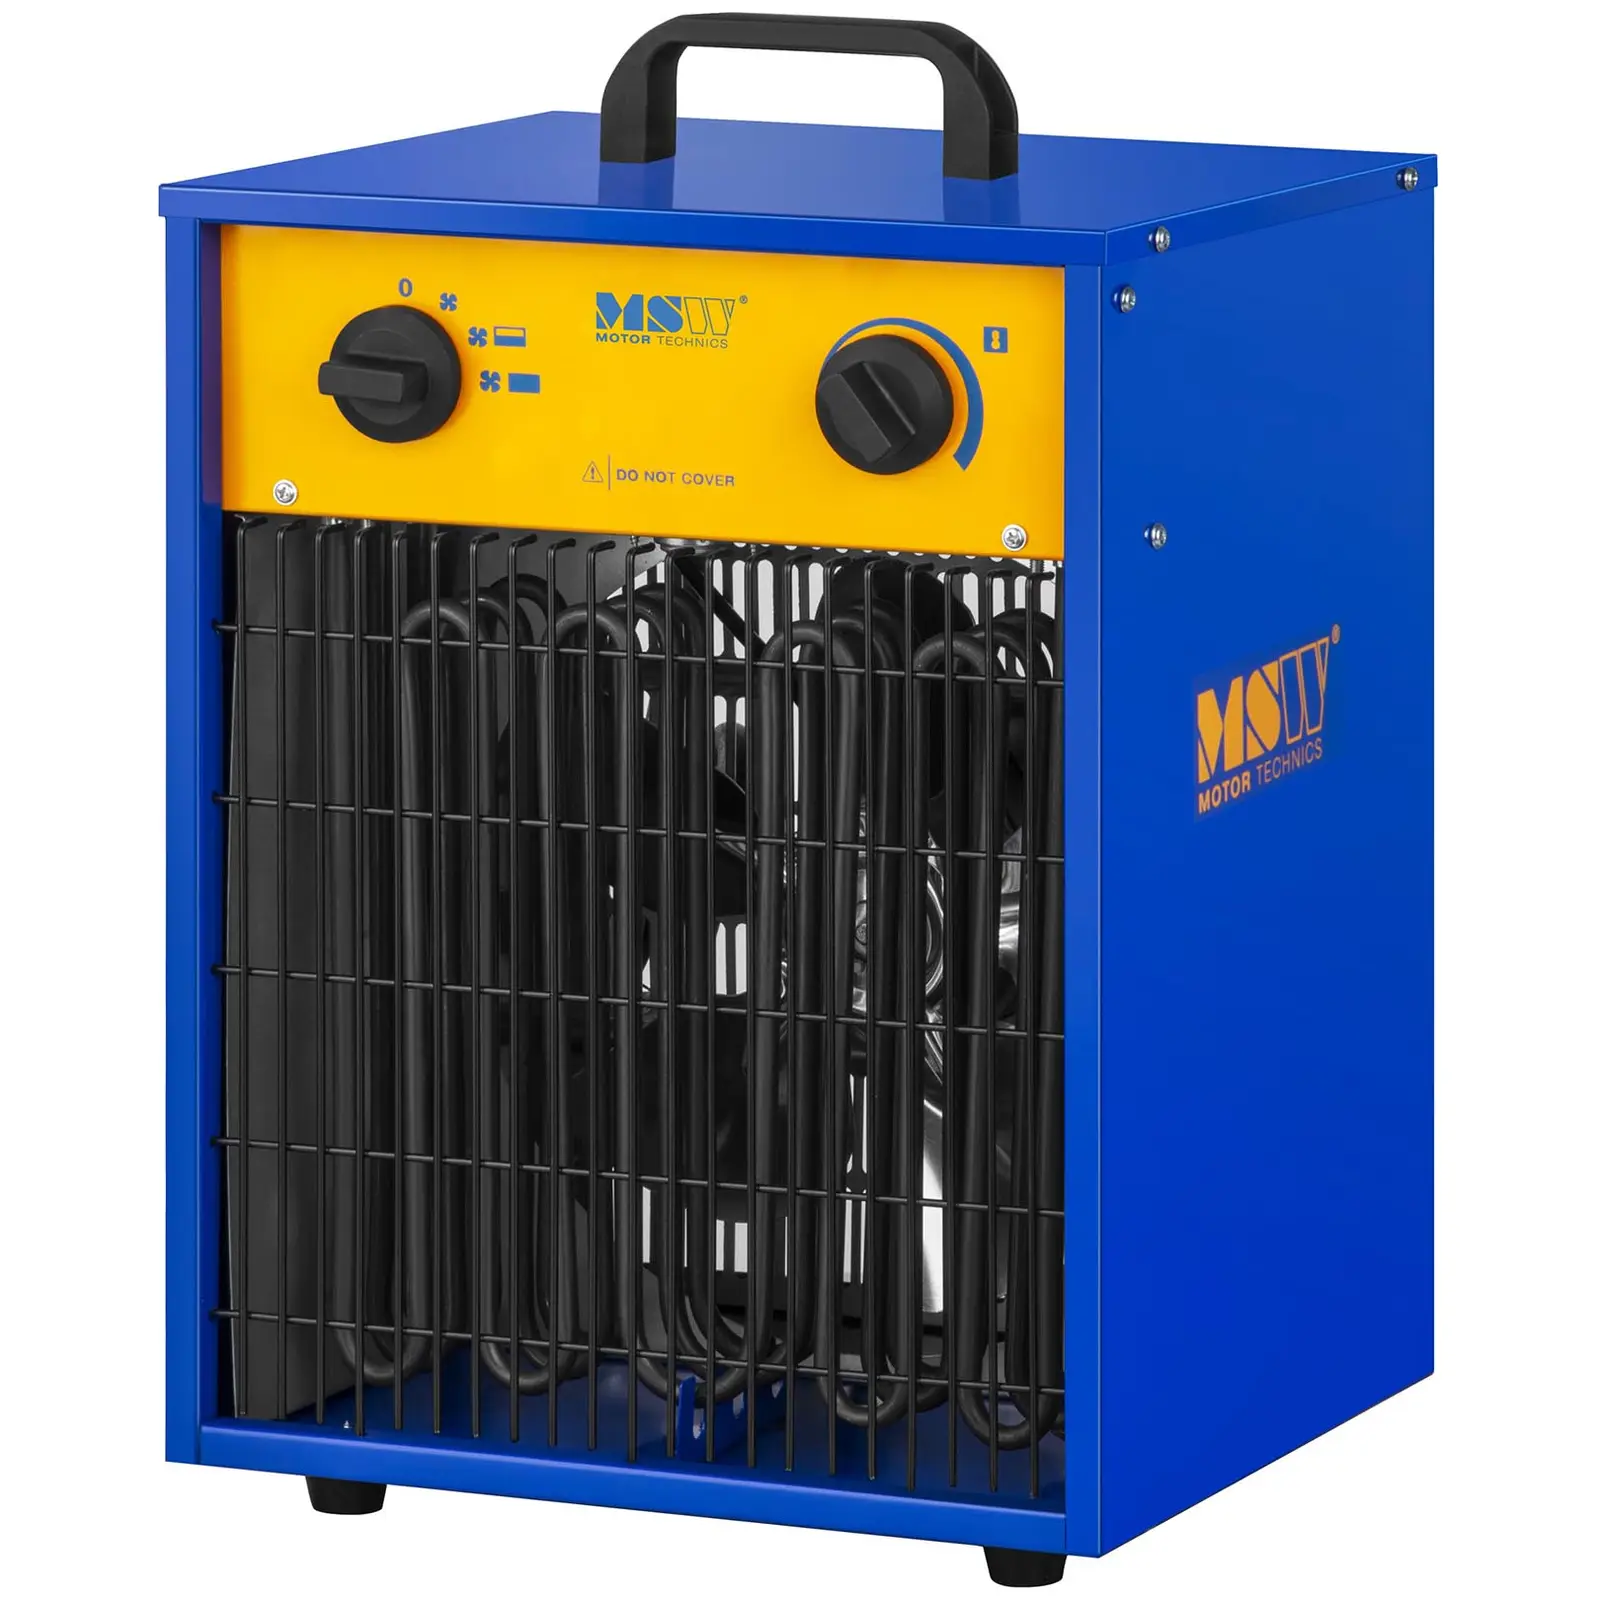 Occasion Chauffage à air pulsé électrique avec fonction de refroidissement - 0 à 85 °C - 9 000 W